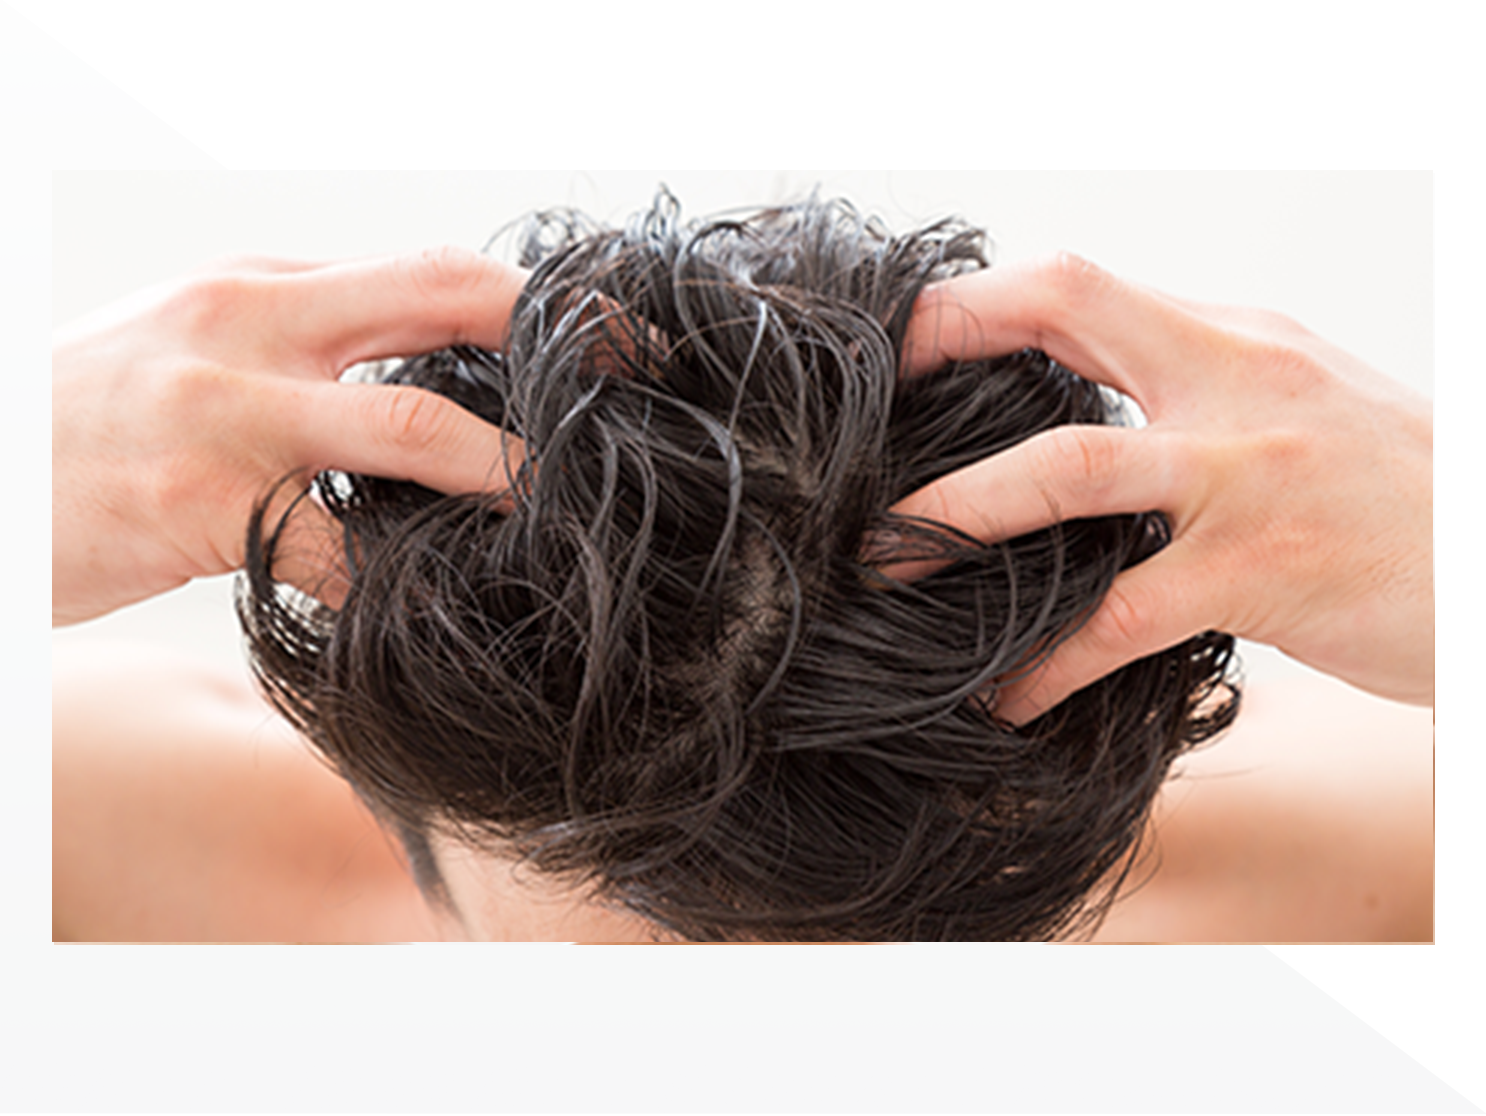 “蓄積皮脂”は発毛剤・育毛剤の浸透に影響